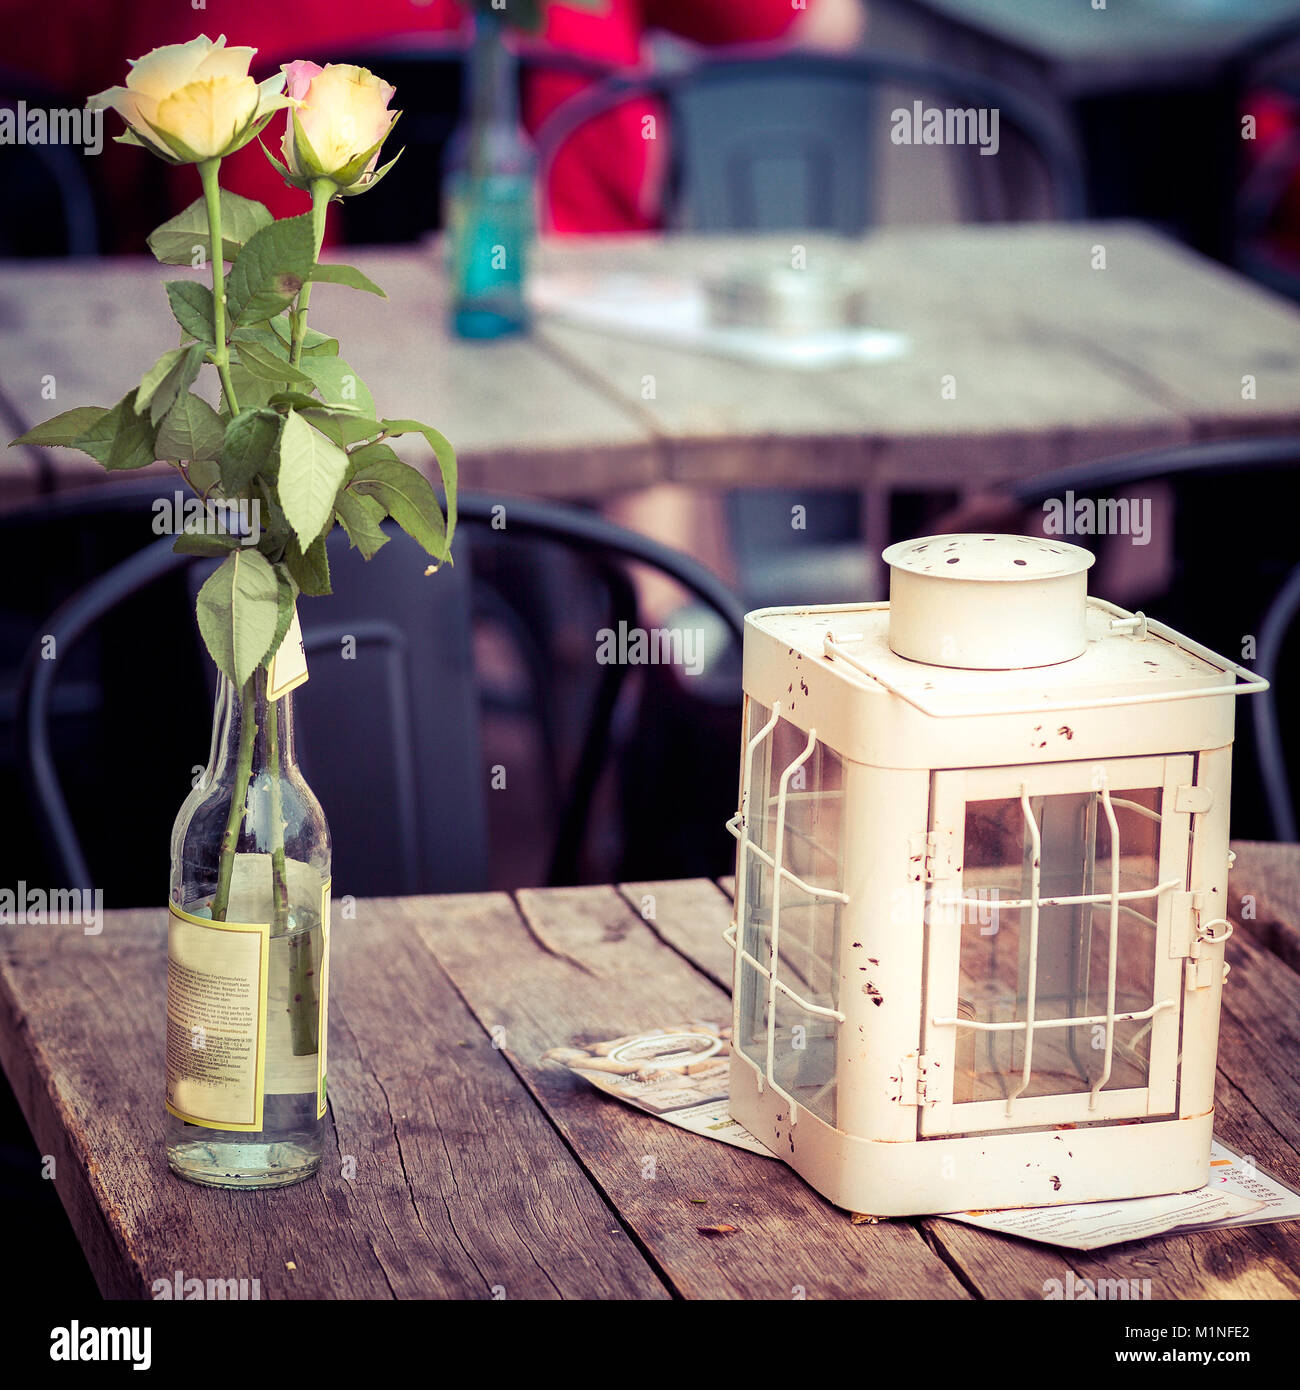 Deux roses, un porte-bougie sur une table en bois pub, Amsterdam, Pays-Bas Banque D'Images